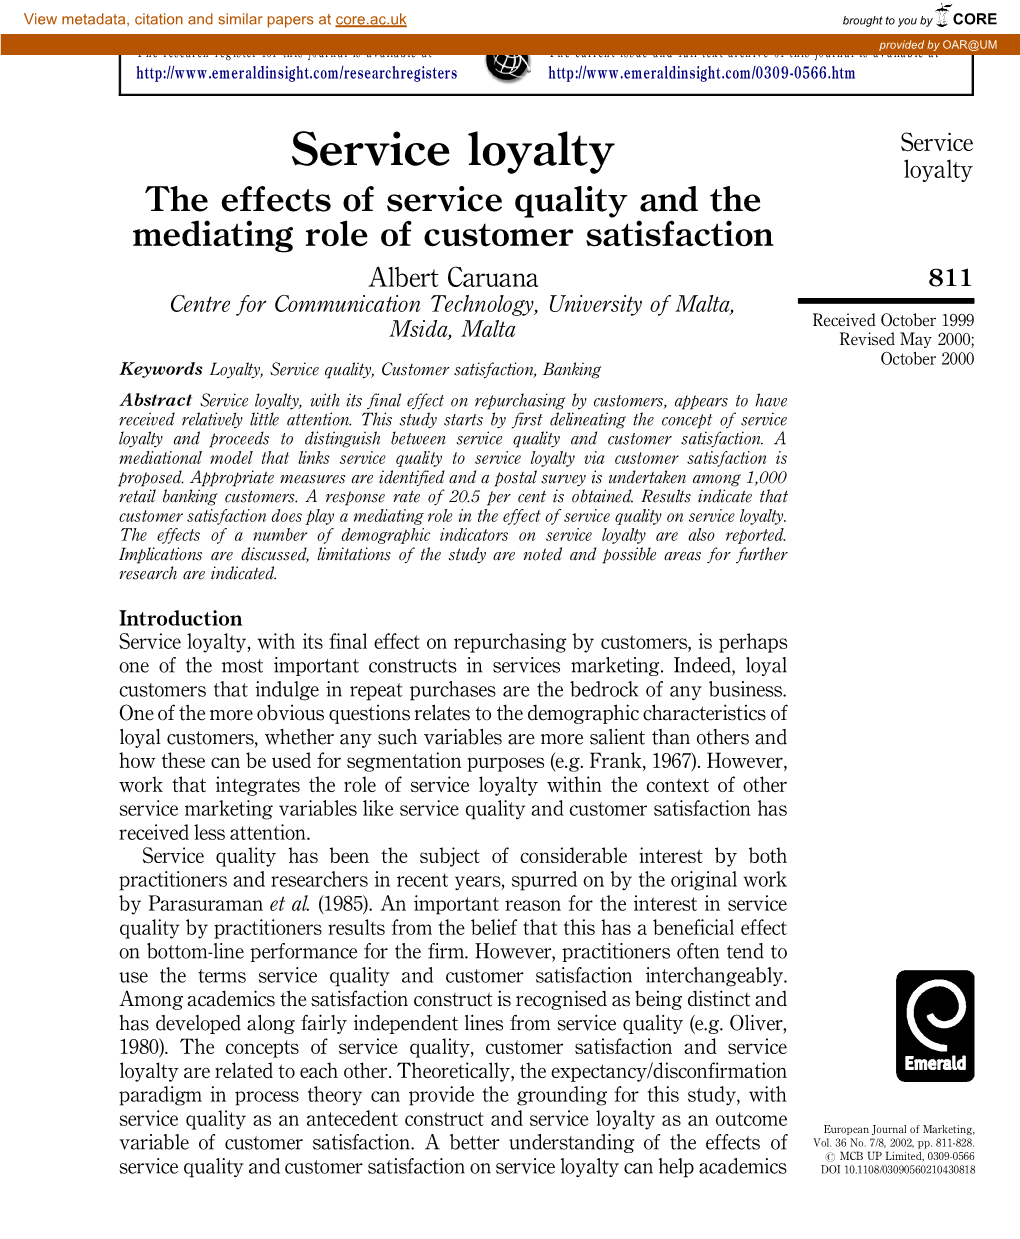 Service Loyalty